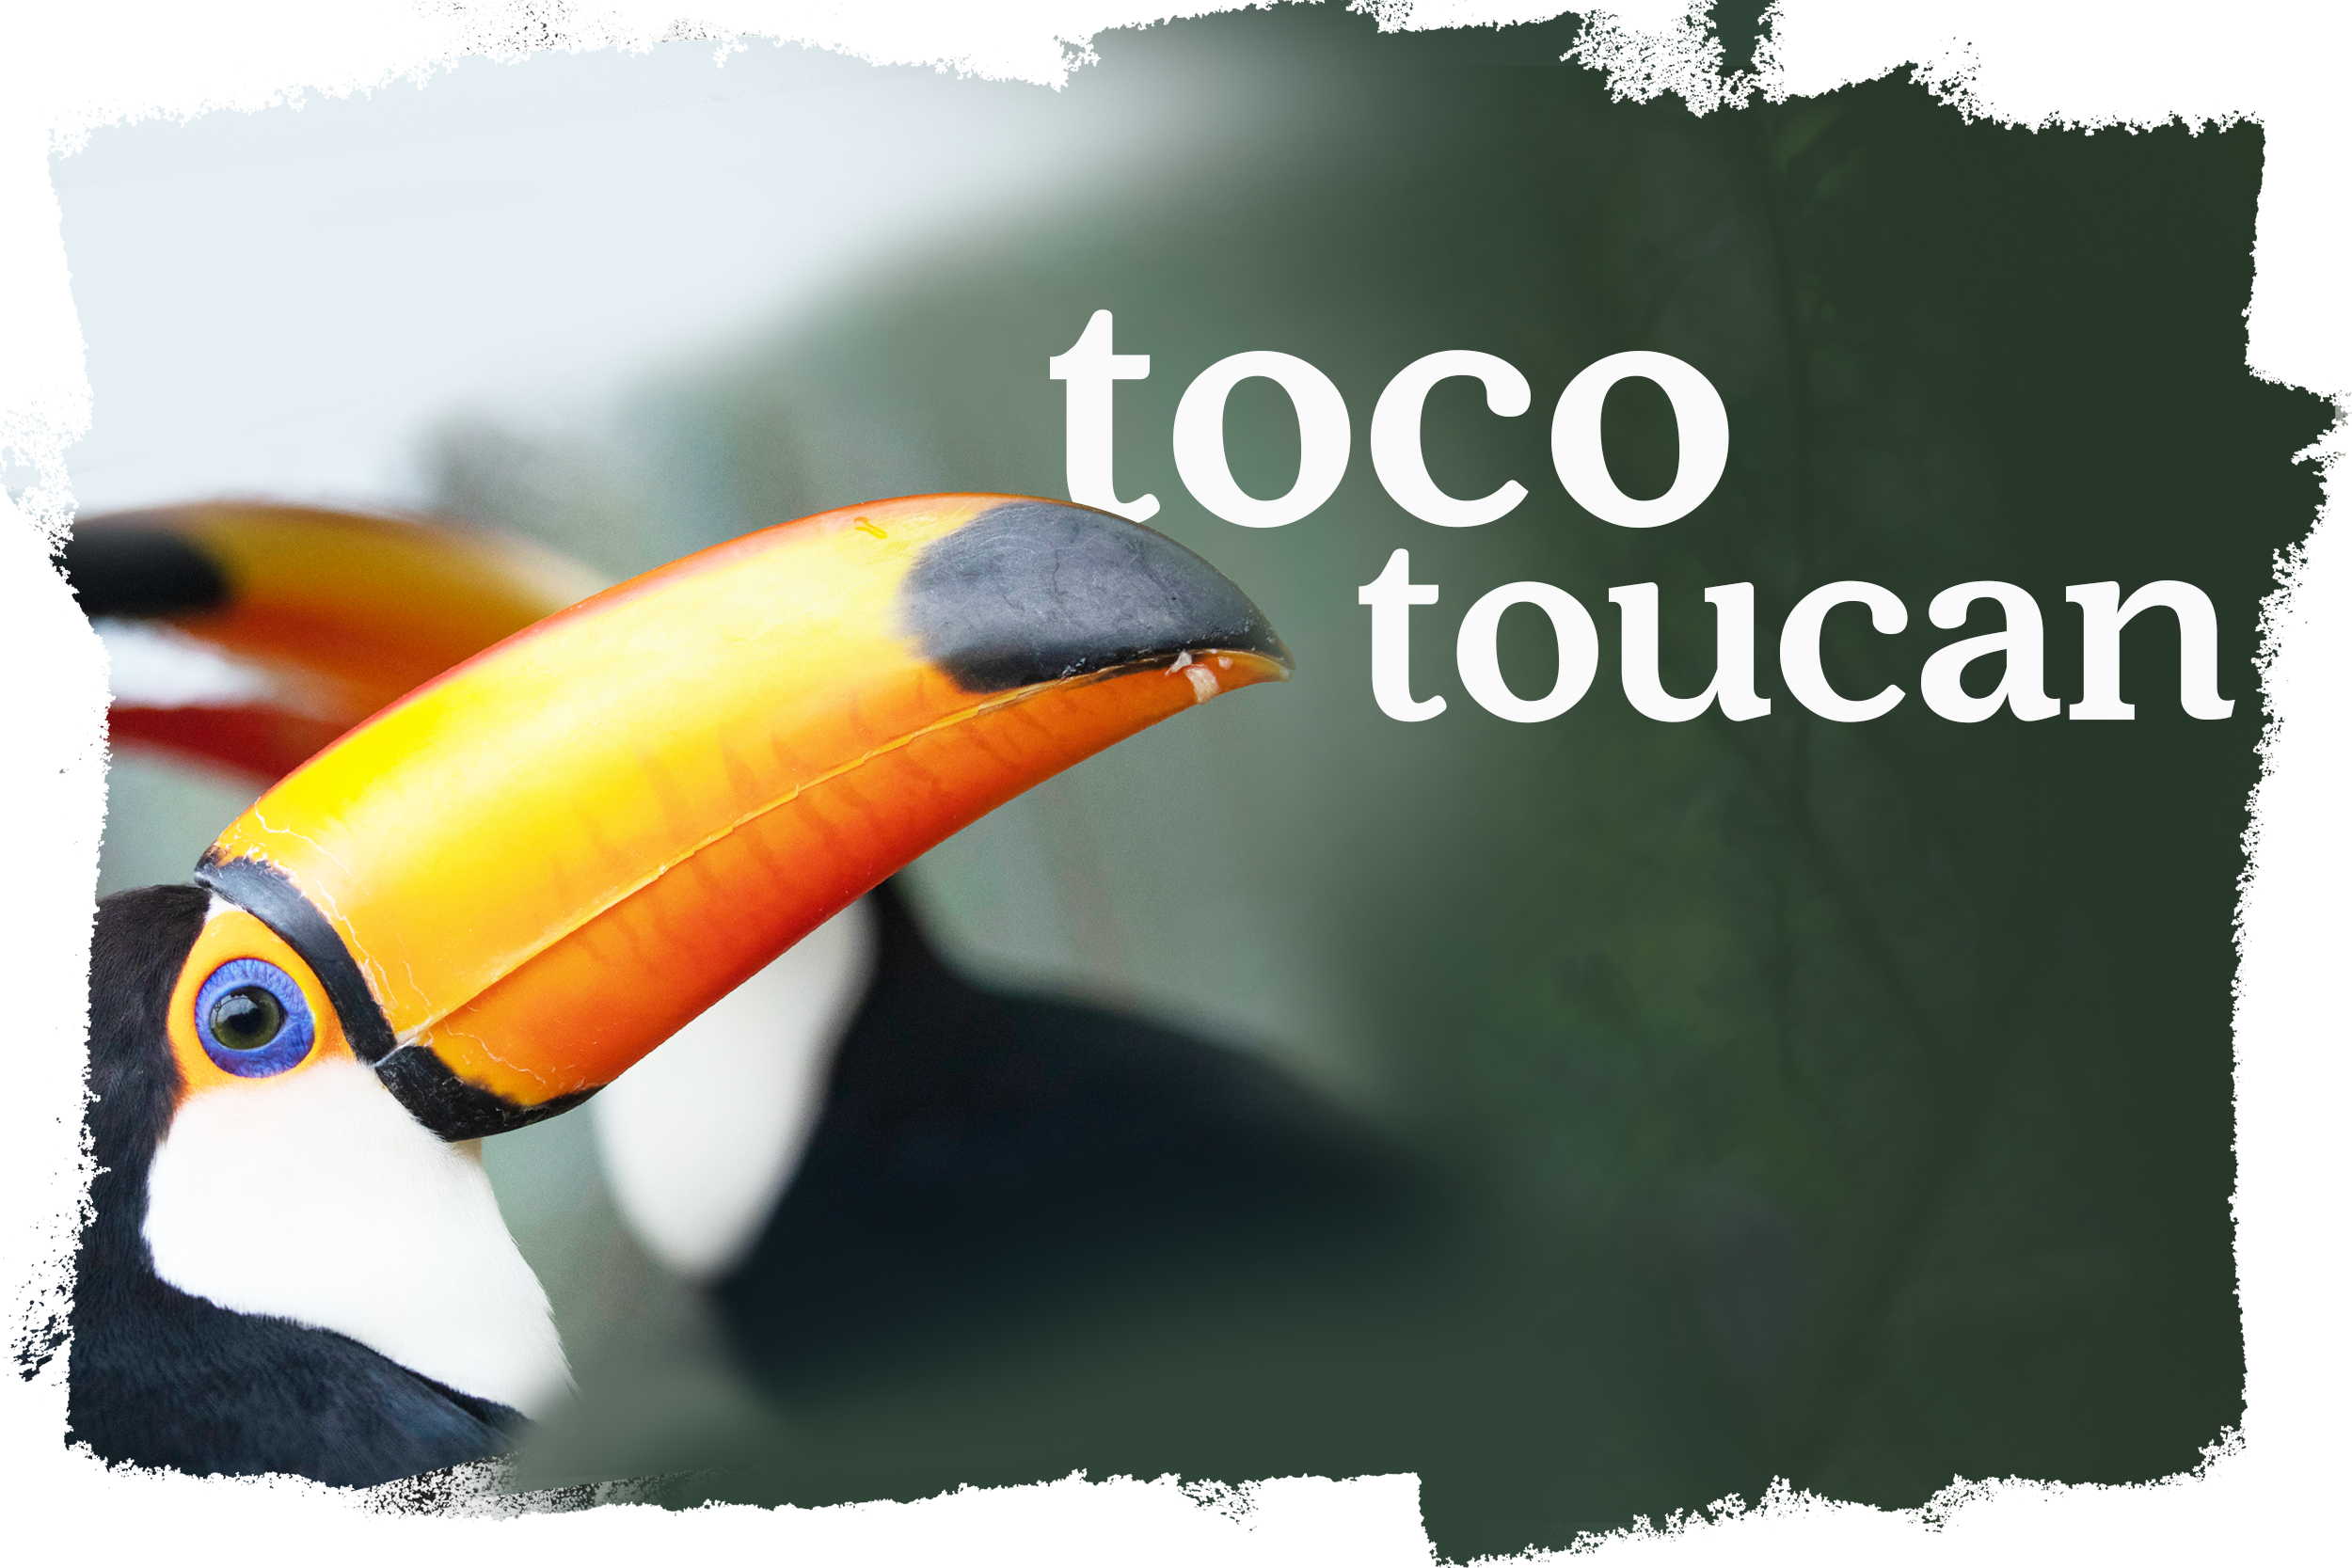 Cover_Tucano_Toco_EN-US.png